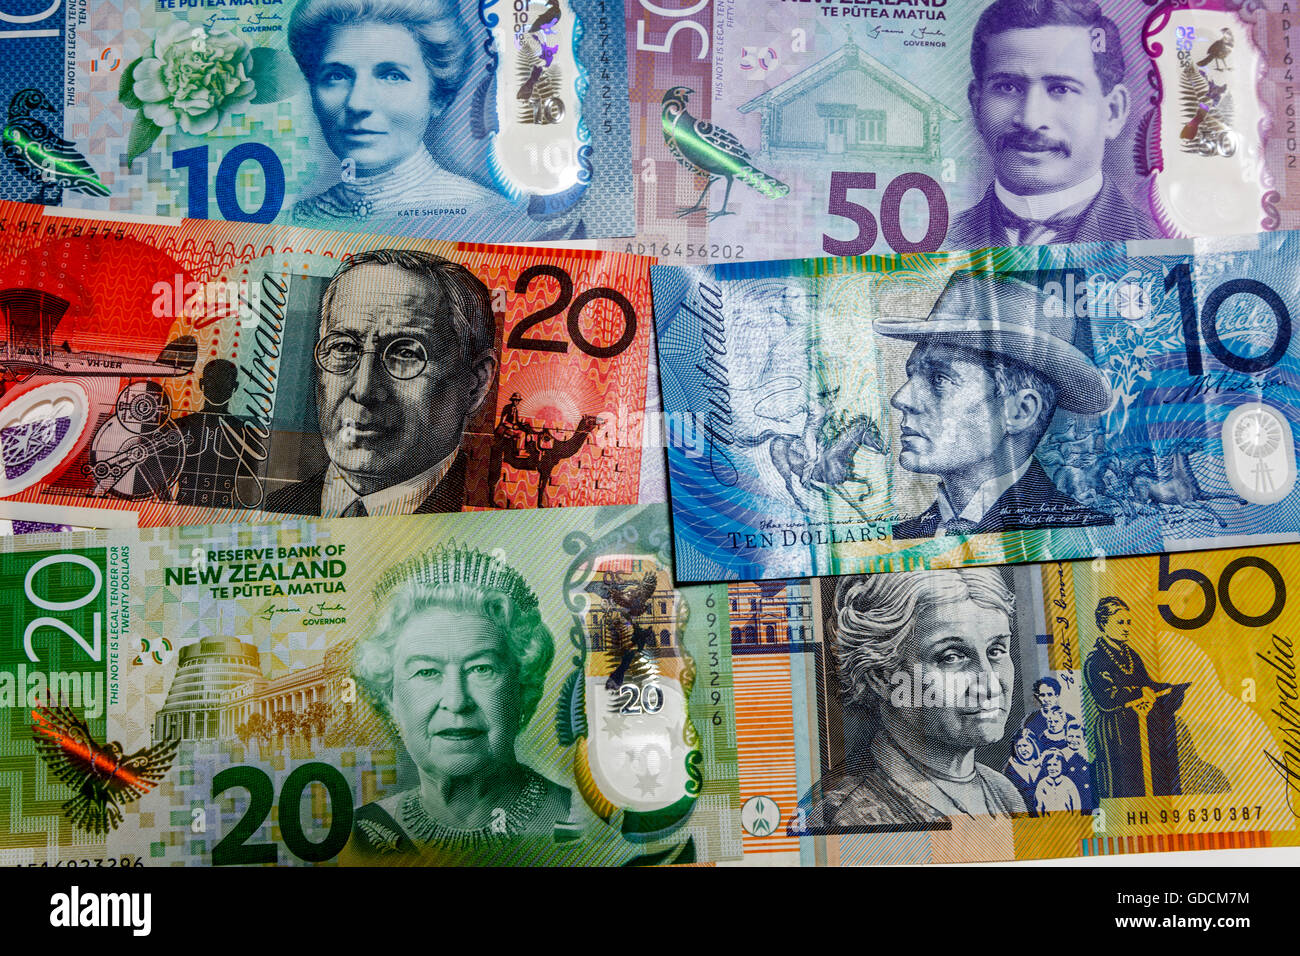 Der neue zweite Generation Kunststoff Polymer Neuseeland $50 $10 $20 kiwi Dollar Banknoten und australischen Banknoten Stockfoto